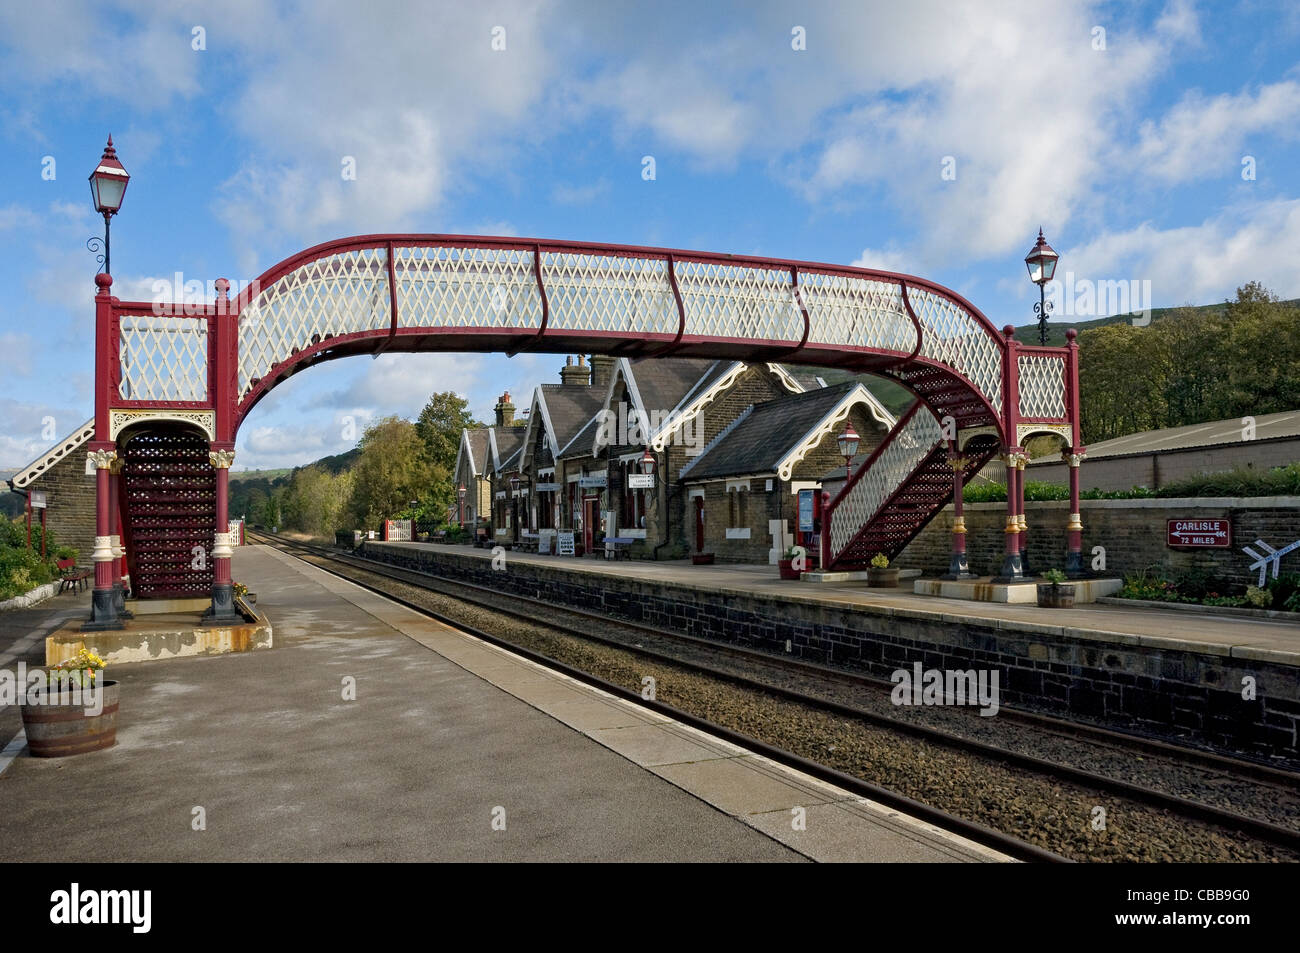 Steg Brücke verbindet Plattformen am Settle Bahnhof Yorkshire Dales North Yorkshire England Vereinigtes Königreich GB Großbritannien Stockfoto